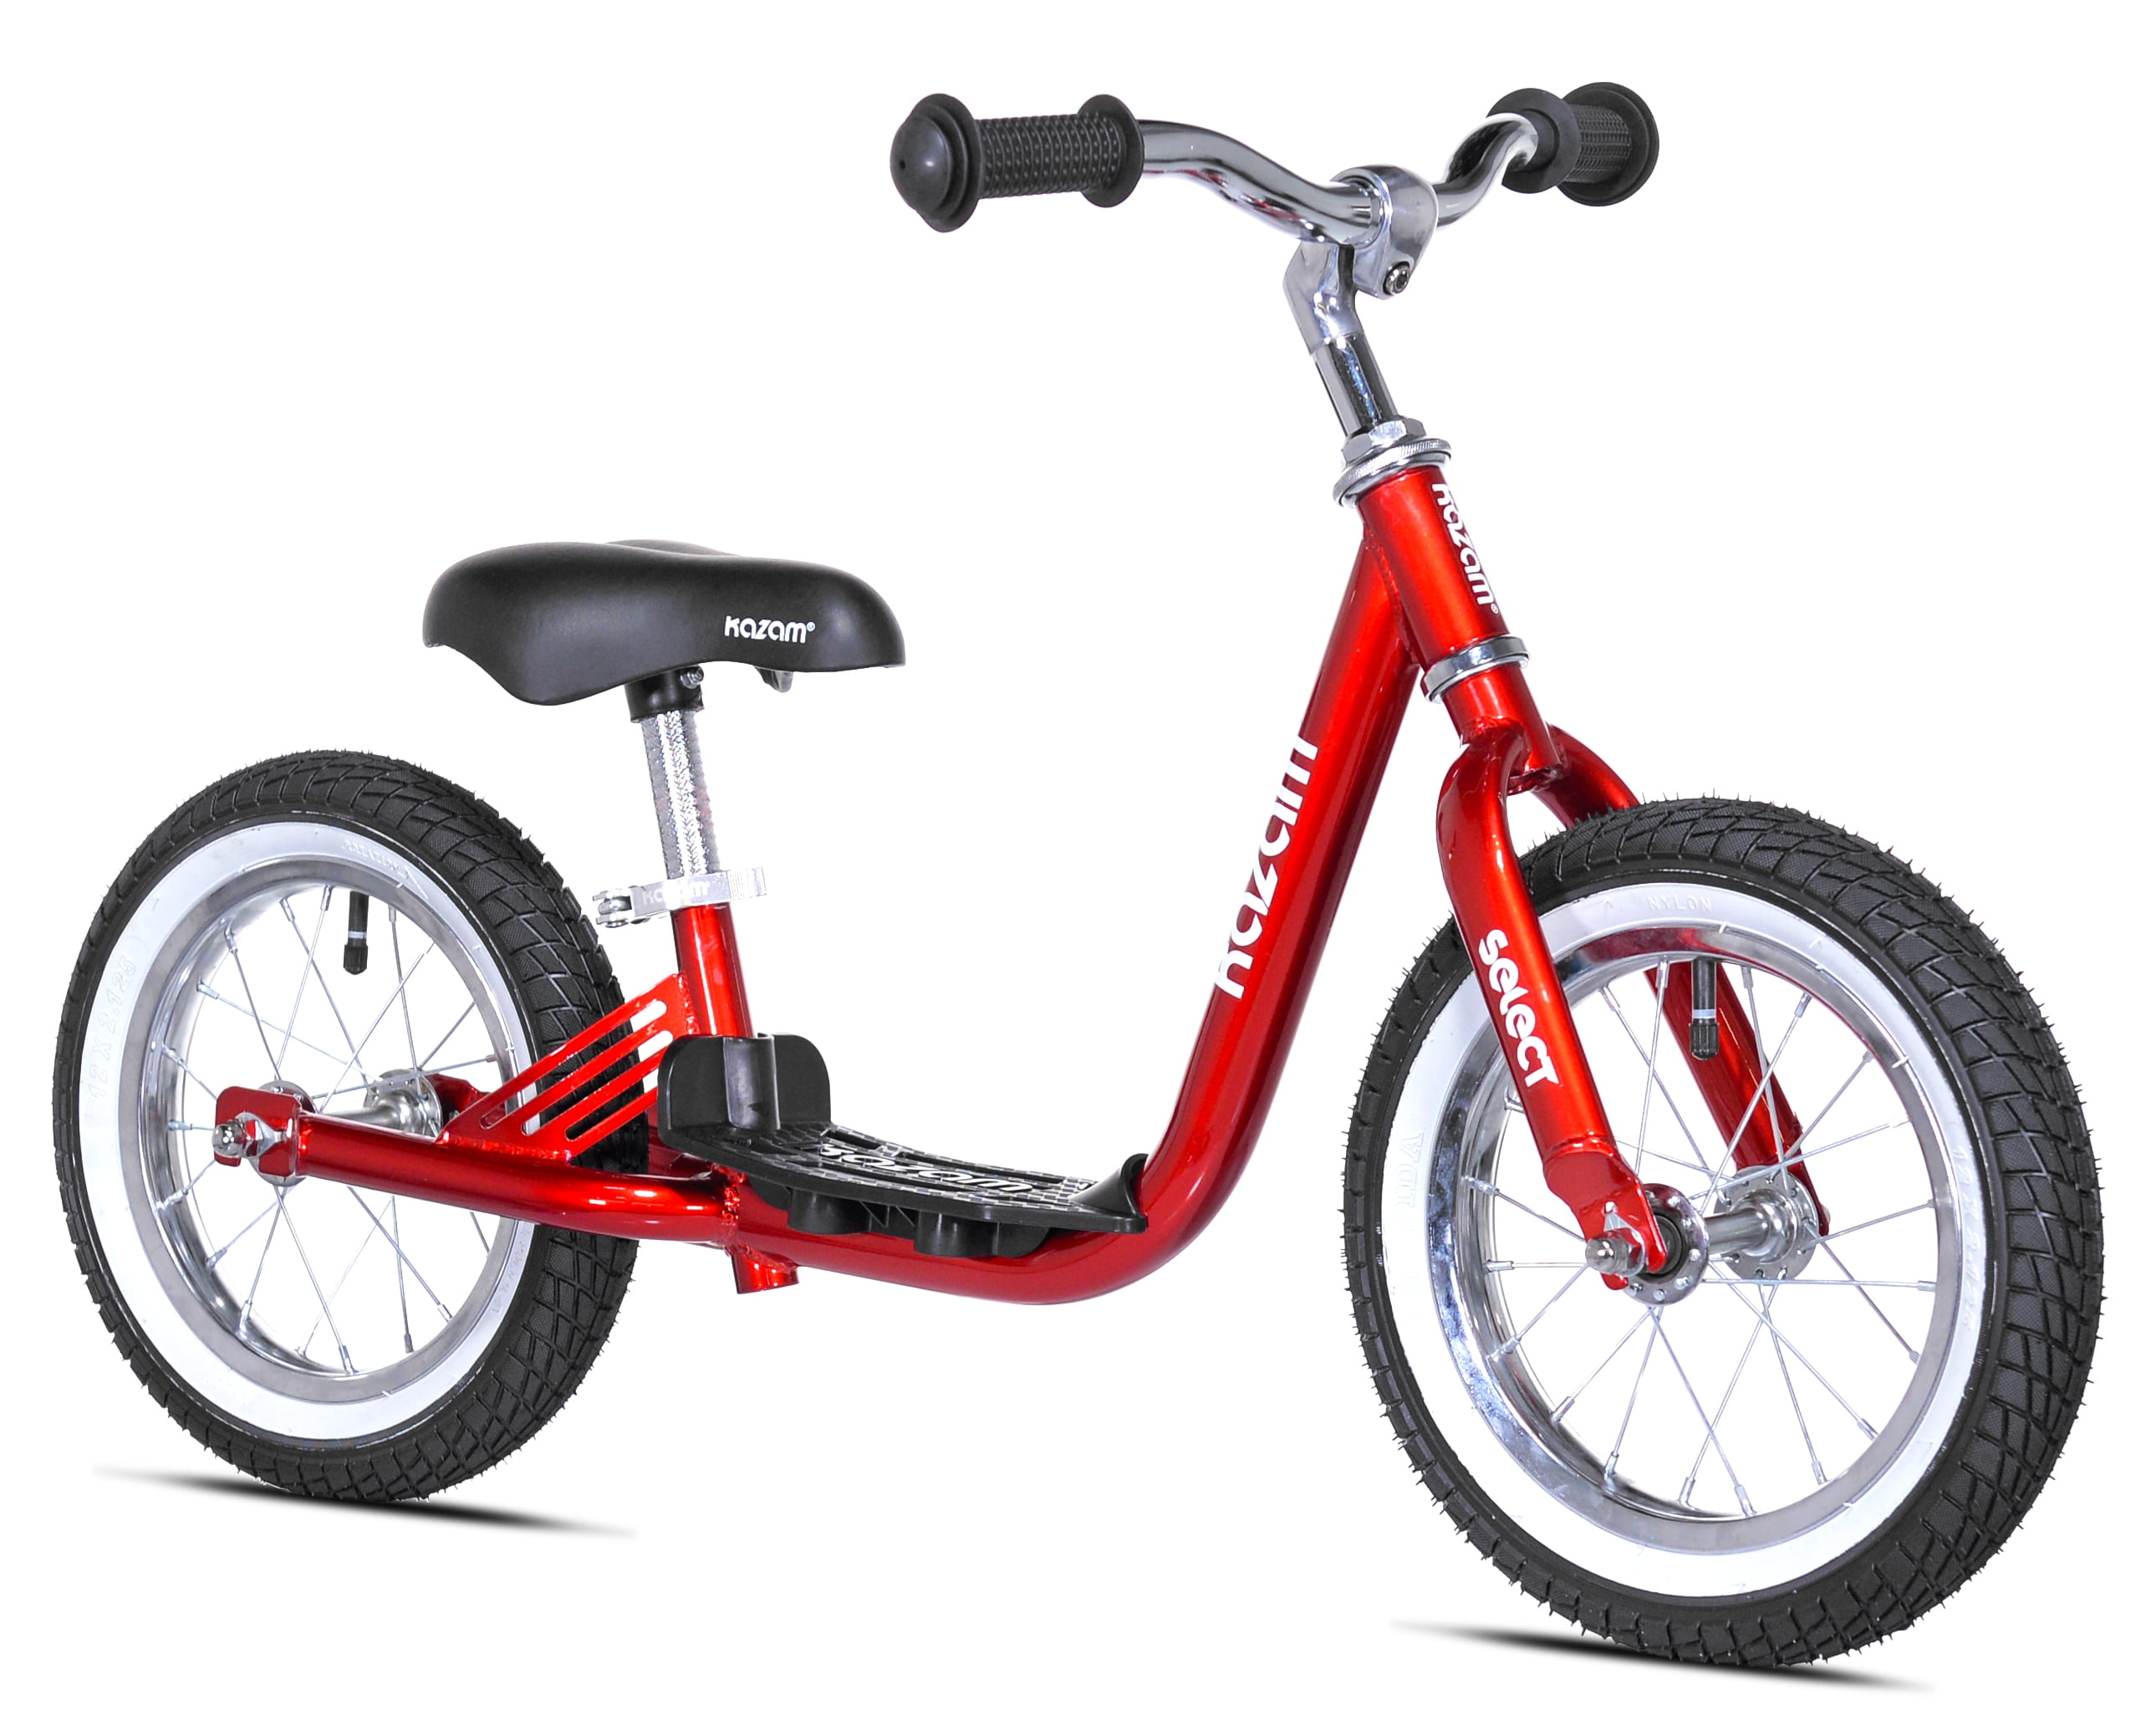 KaZAM 12" Select Child's Balance Bike, Red - Walmart.com - Walmart.com